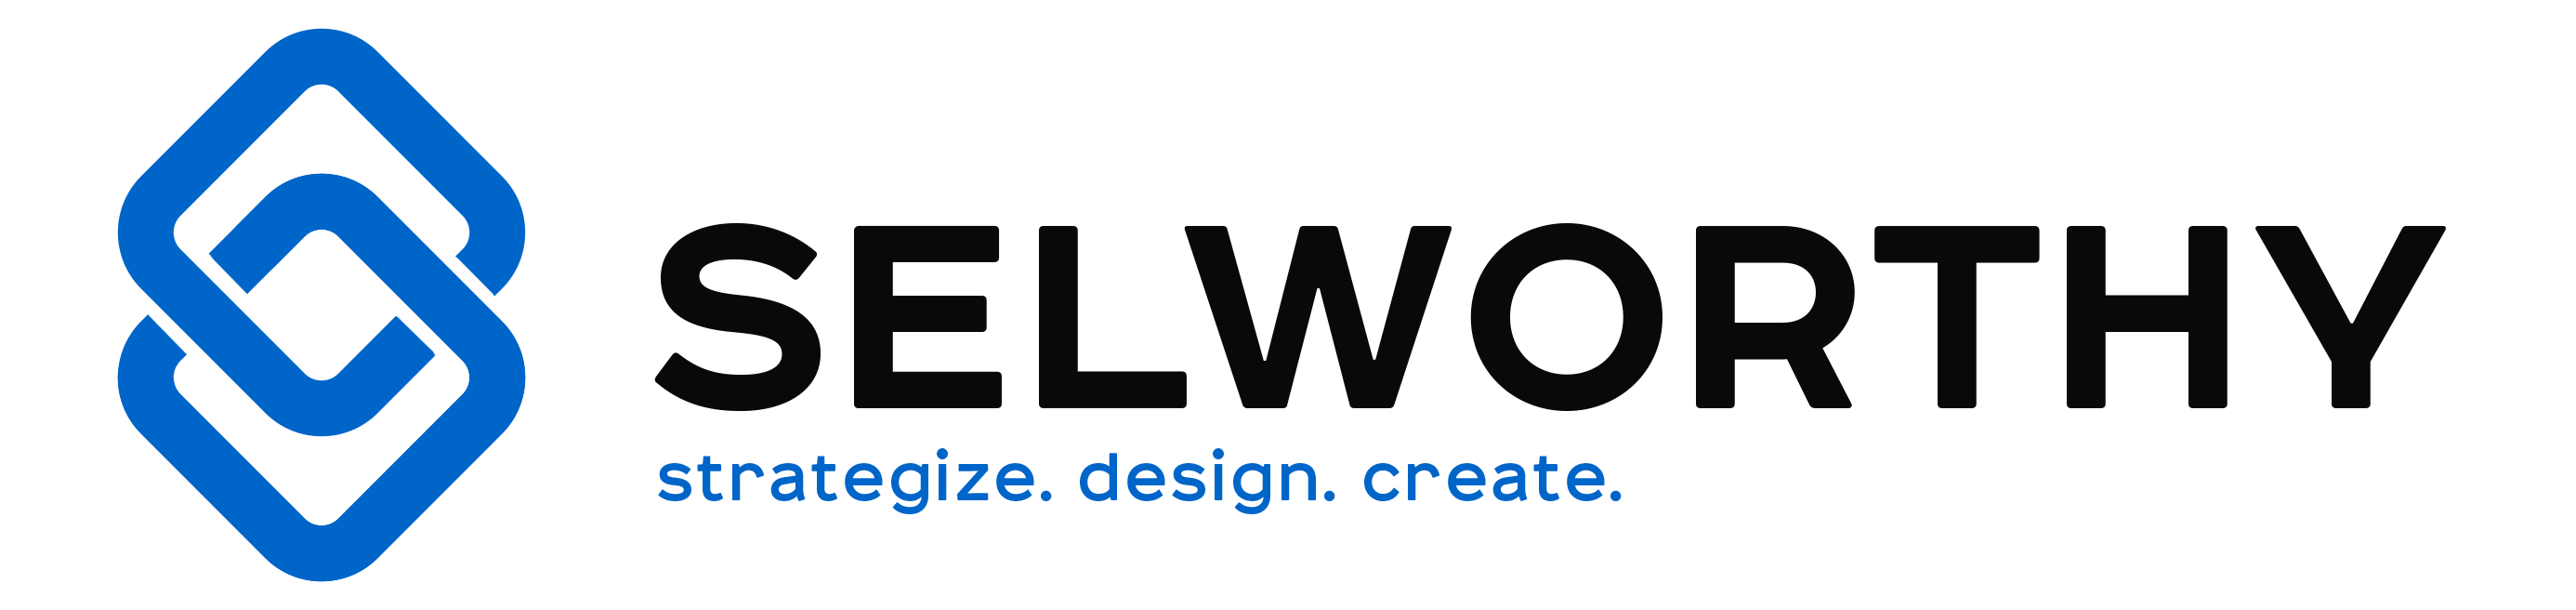 Selworthy Logo - Dark